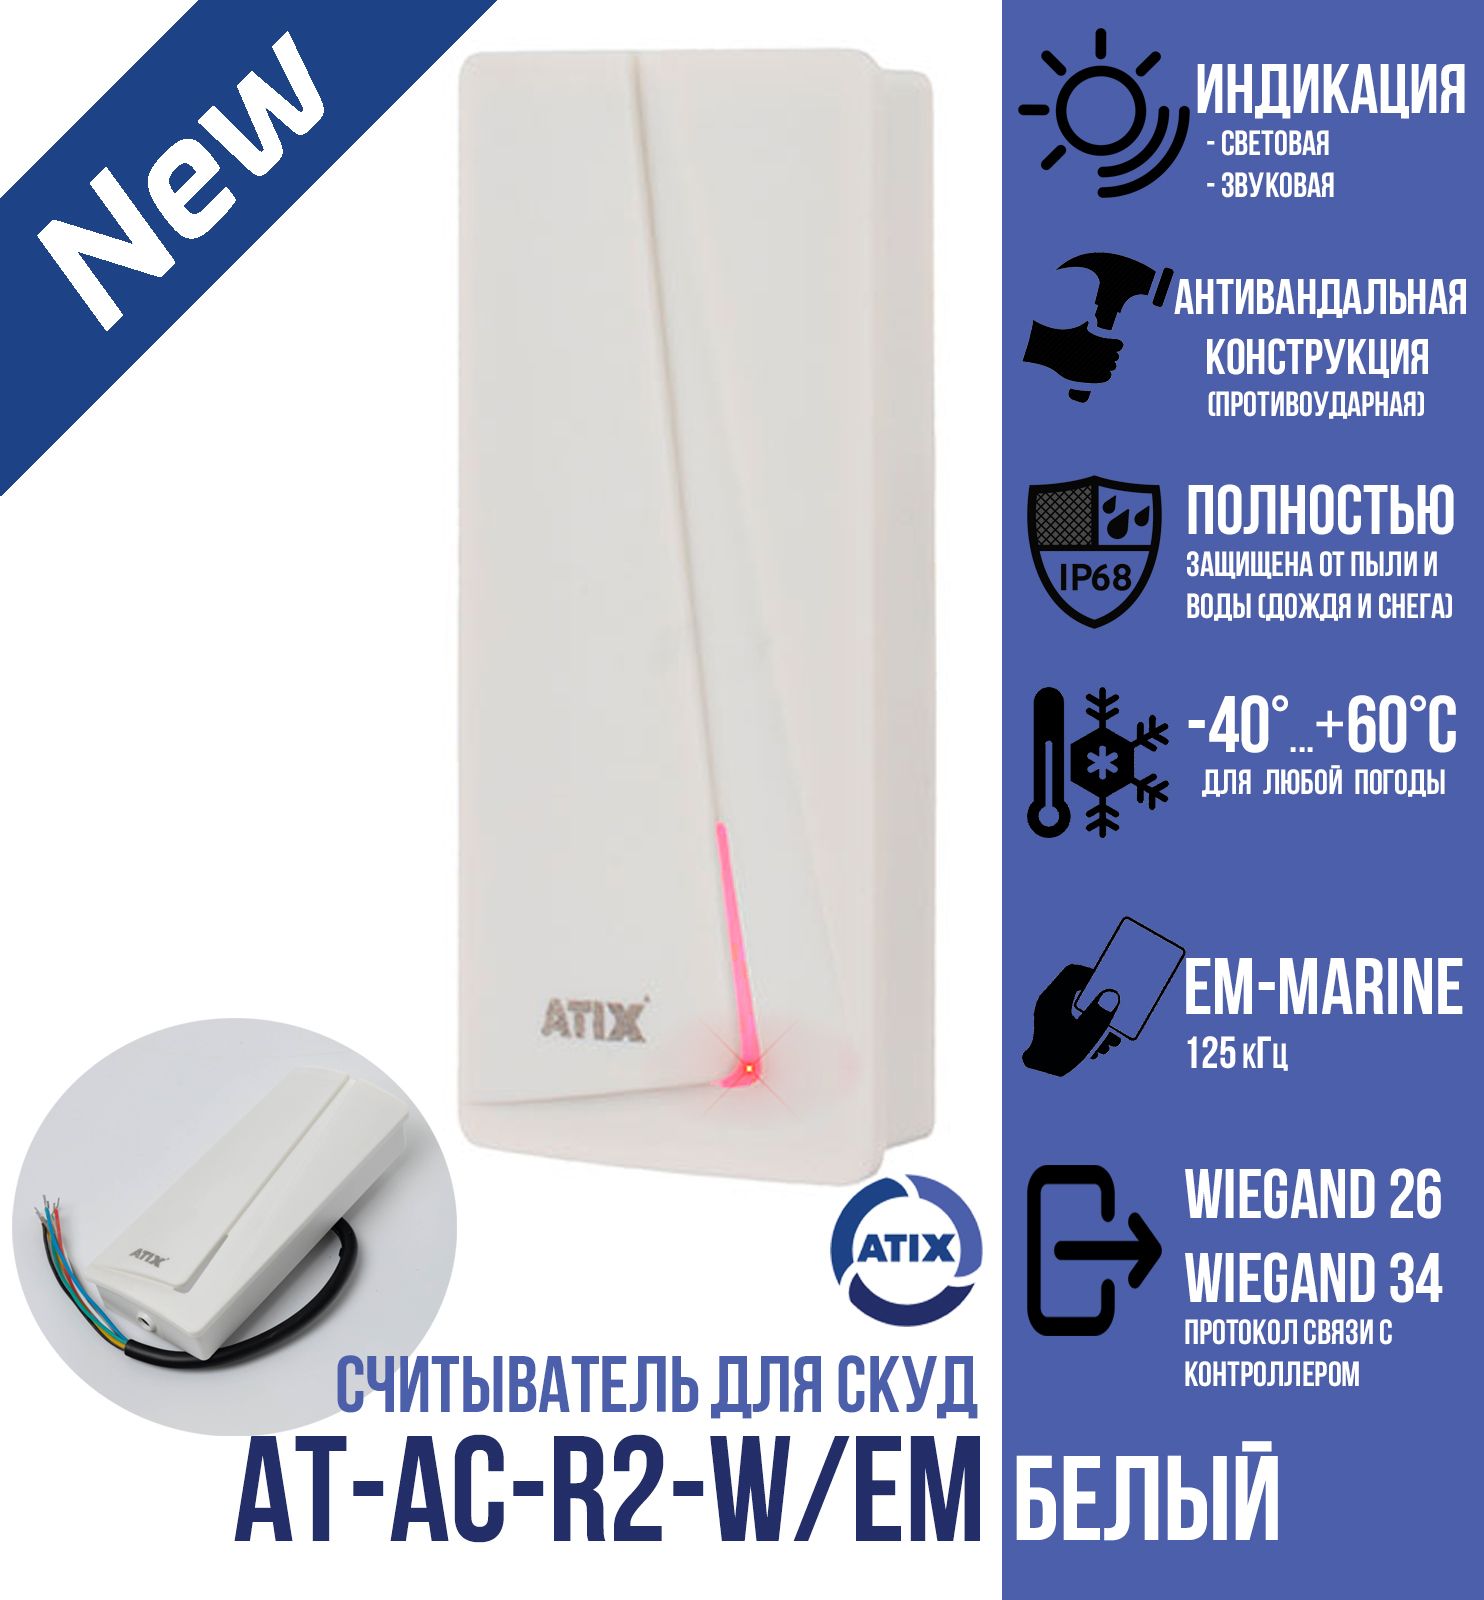 Считыватель СКУД ATIX для карт и брелоков EM-Marine, AT-AC-R2-W/EM, белый, 125кГц, IP 68